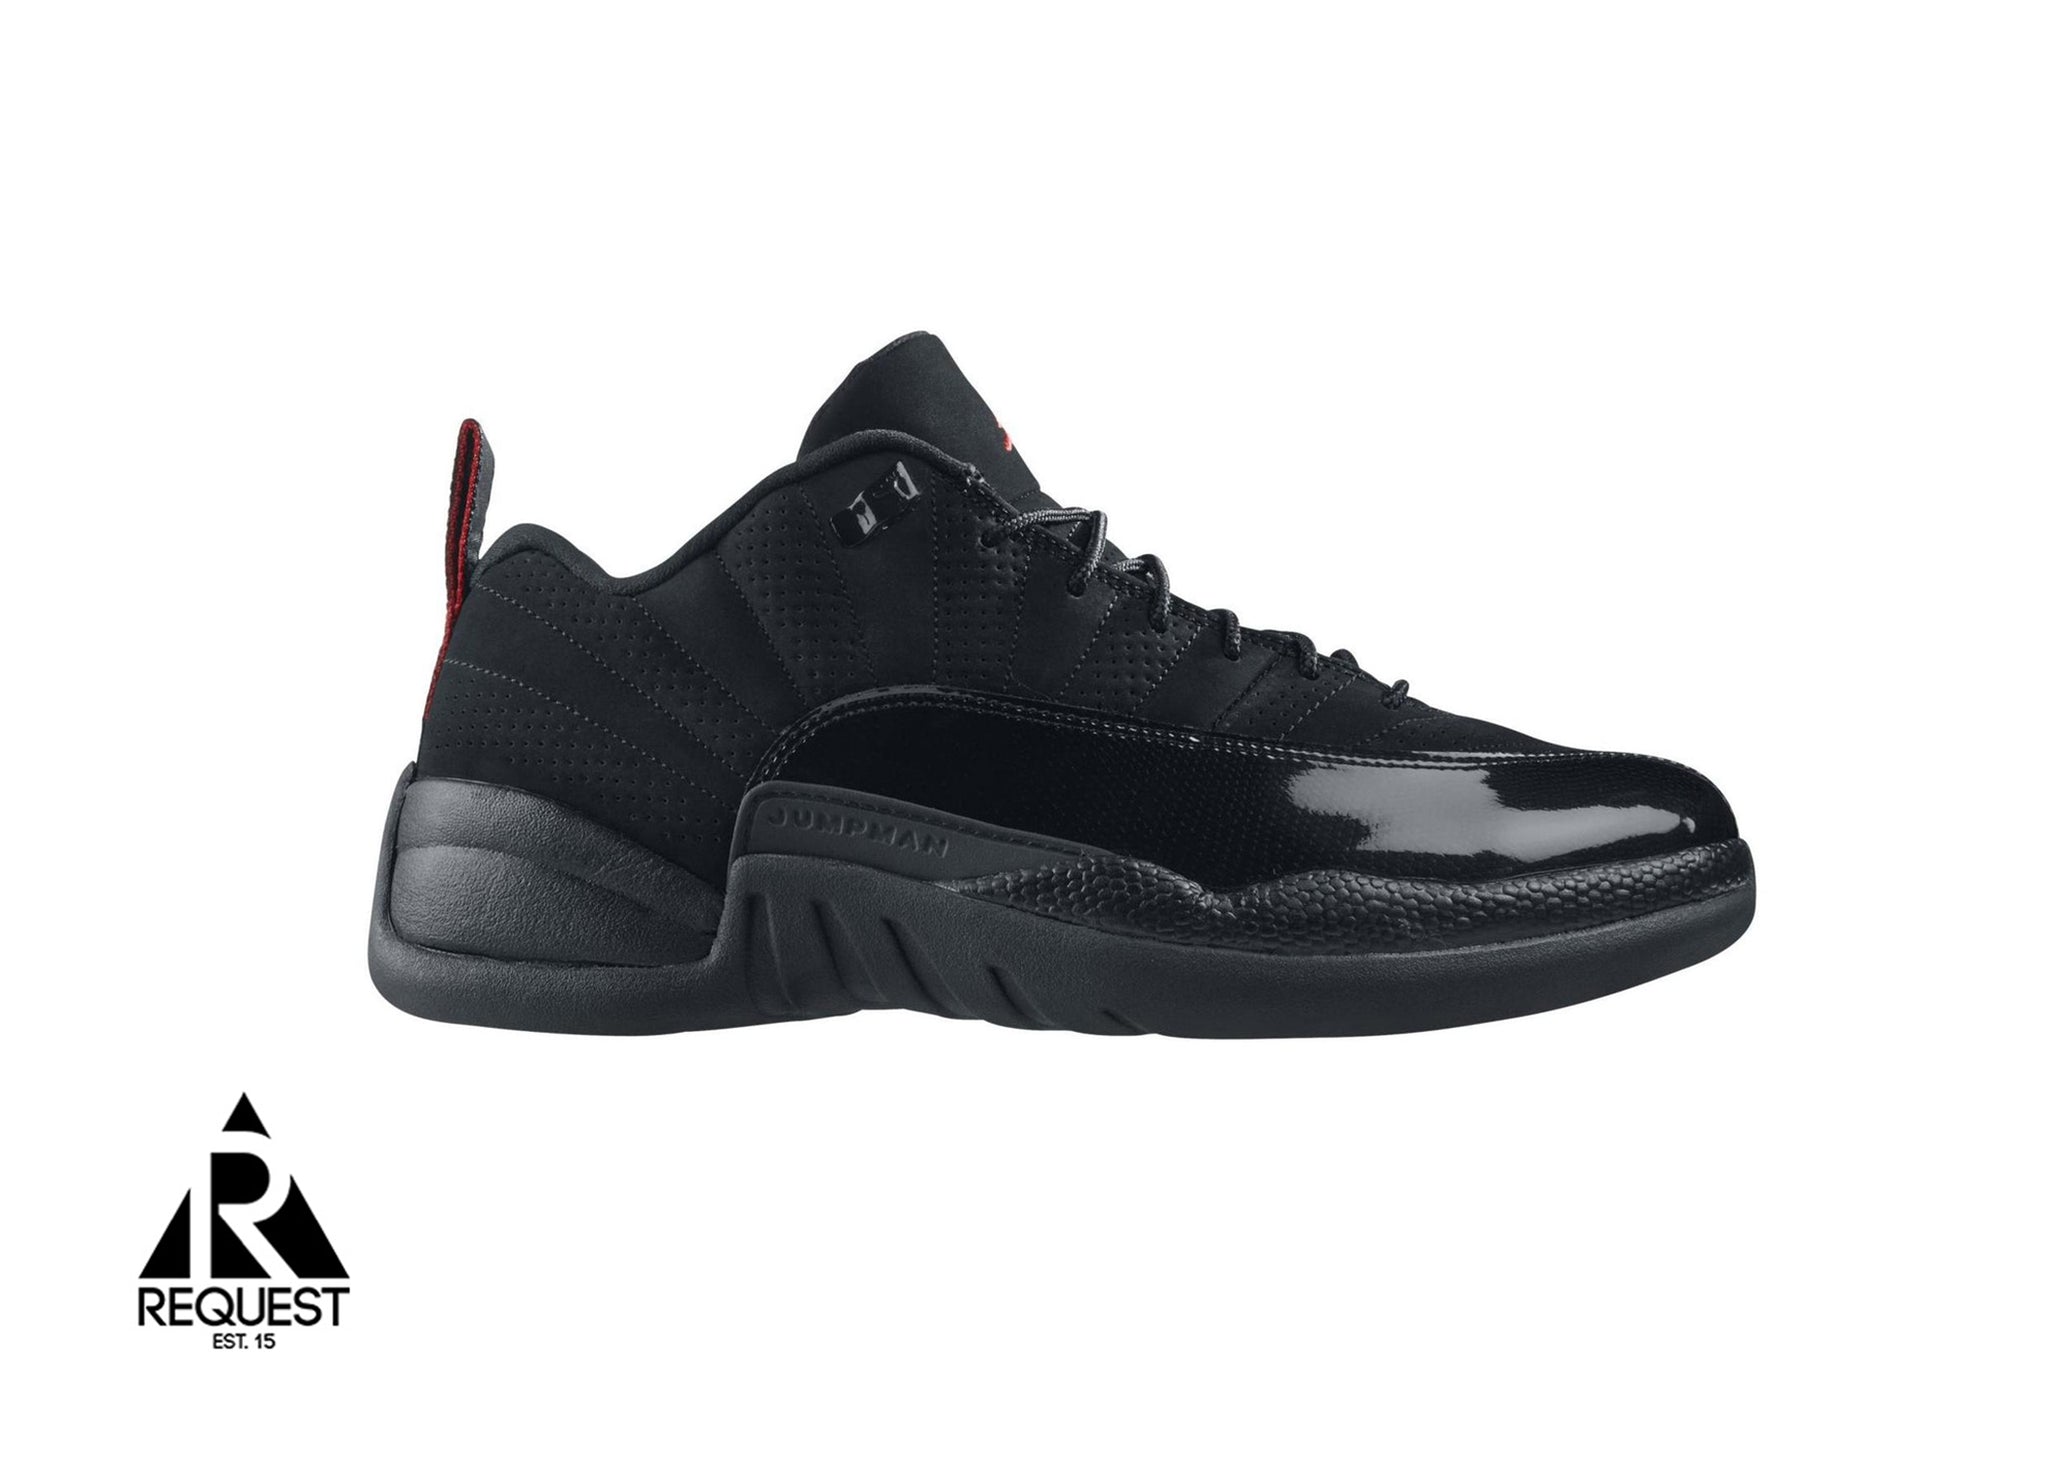 Air Jordan 12 Retro Low “Black Patent 